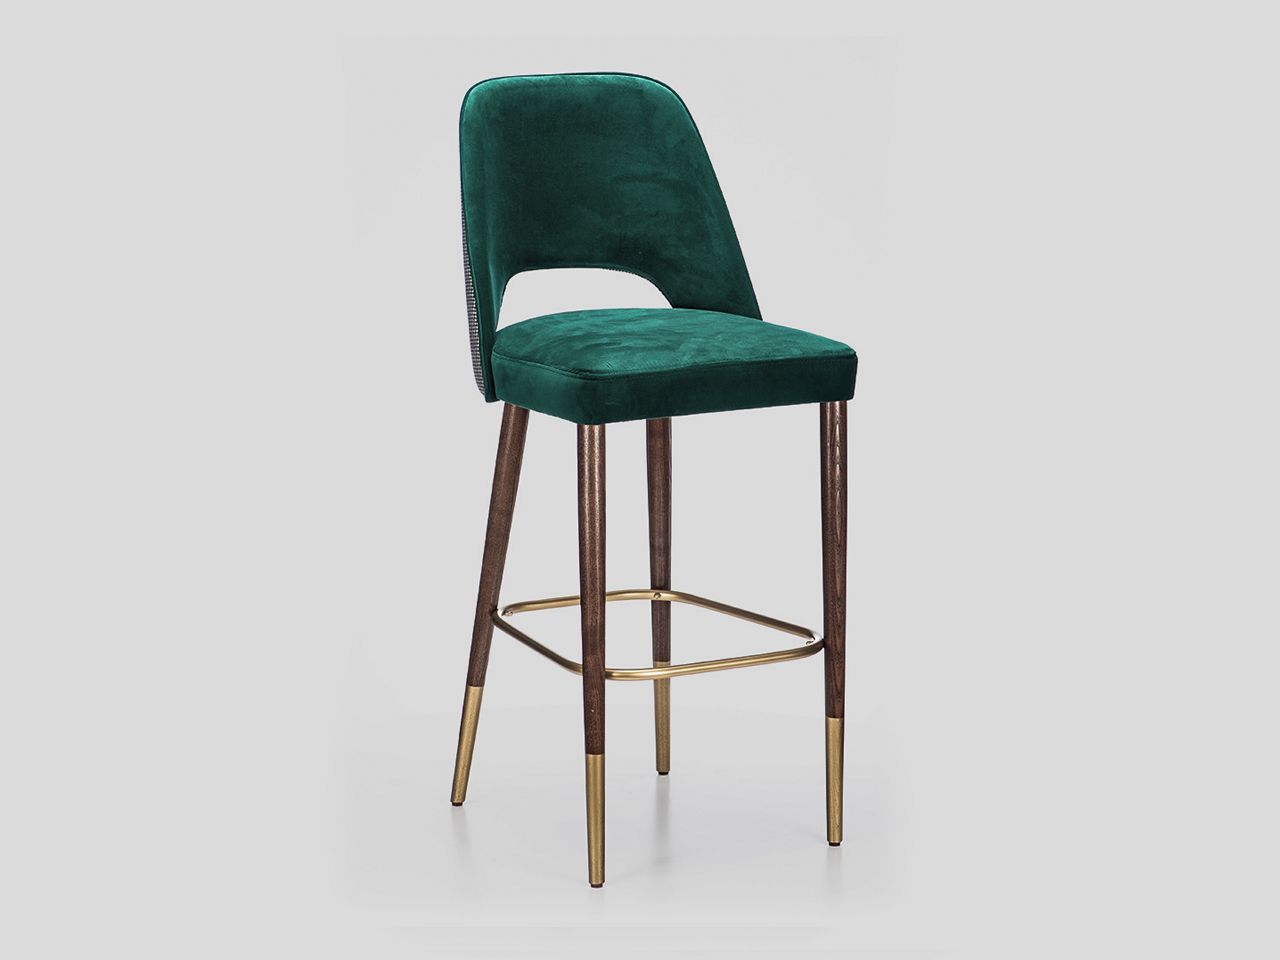 Moderna barska tapacirana stolica materijali po zelji Linea Milanovic namestaj po meri